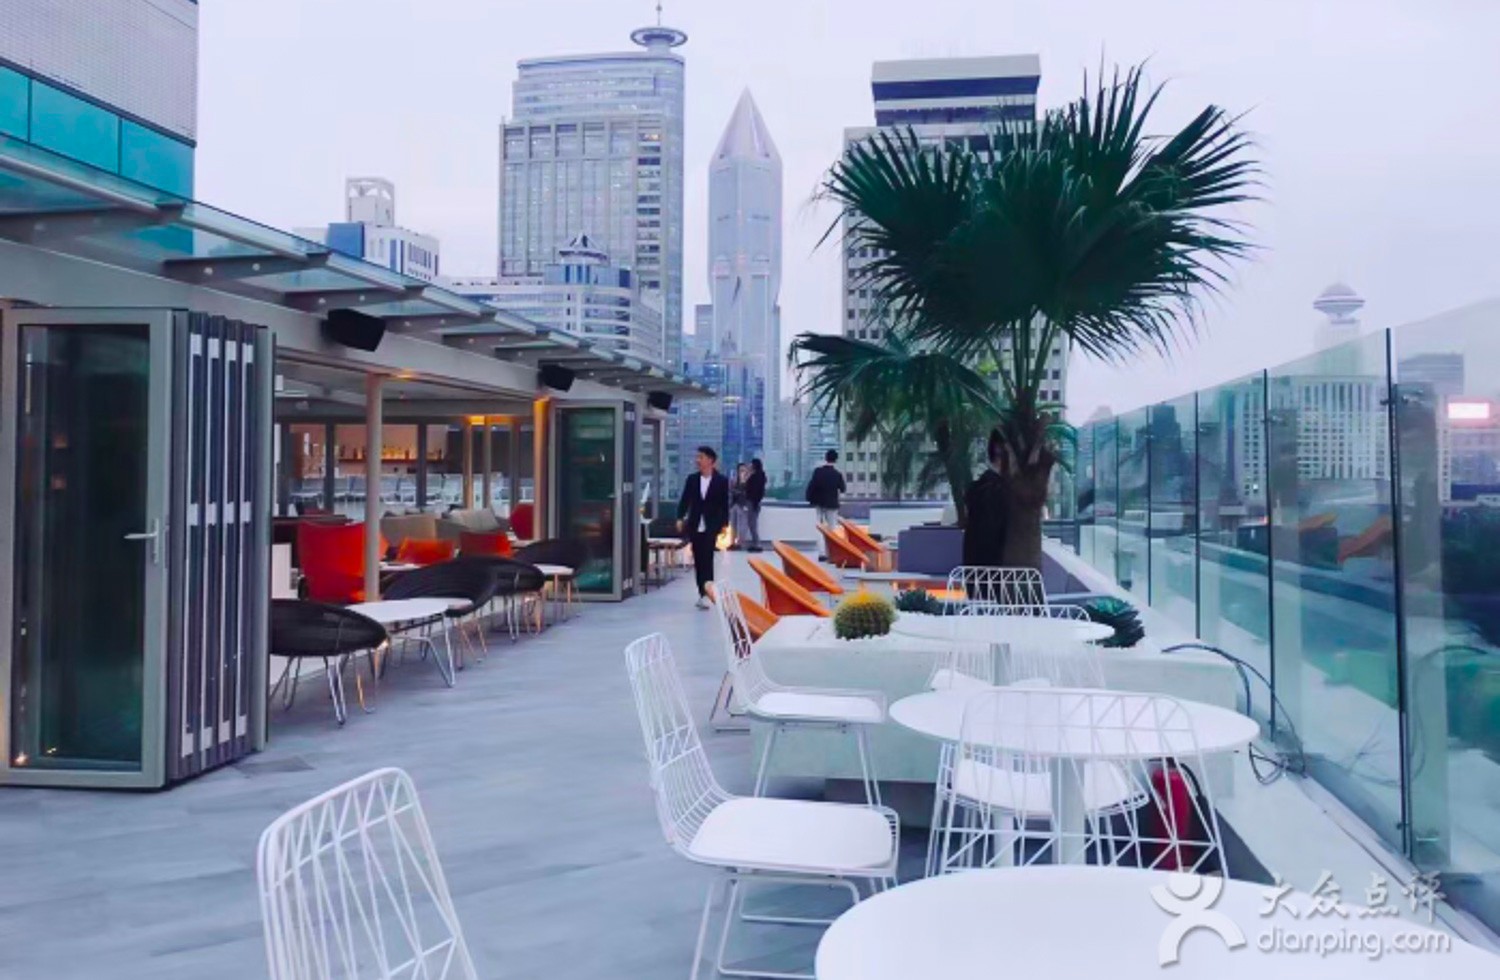 Shanghai's Top New Restaurants of 2016